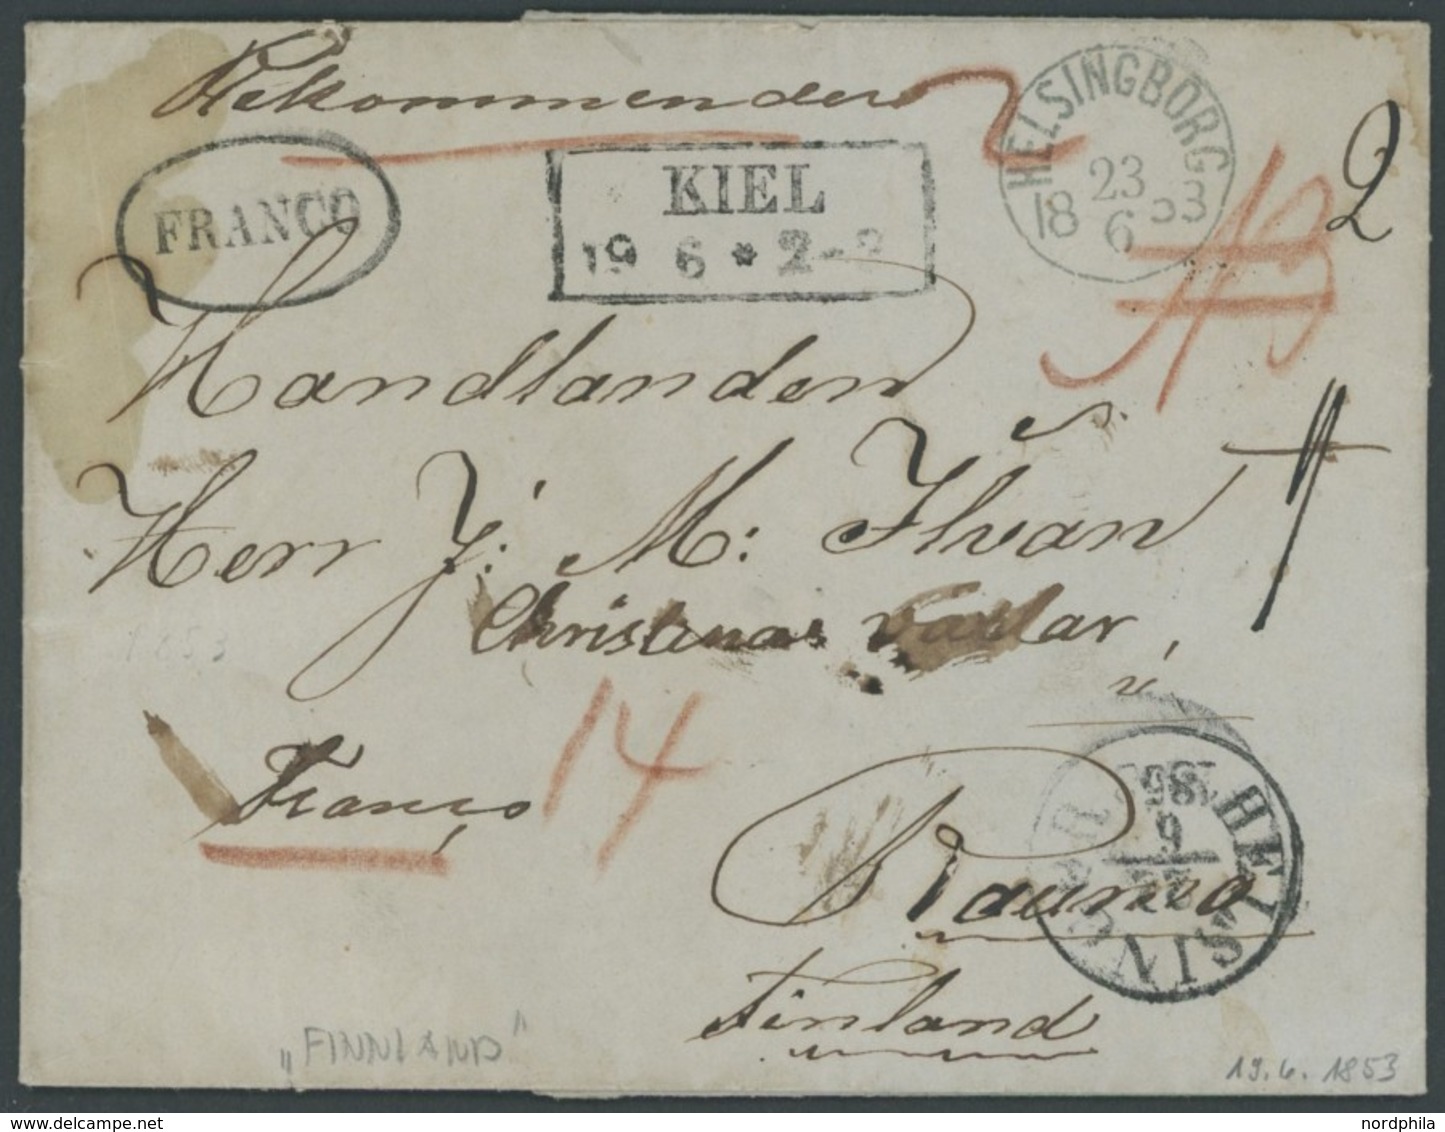 SCHLESWIG-HOLSTEIN 1853, KIEL, R2 Auf Reco-Brief Mit Inhalt Aus Holtenau über Schweden Nach Finnland, Ovaler Stempel FRA - Vorphilatelie